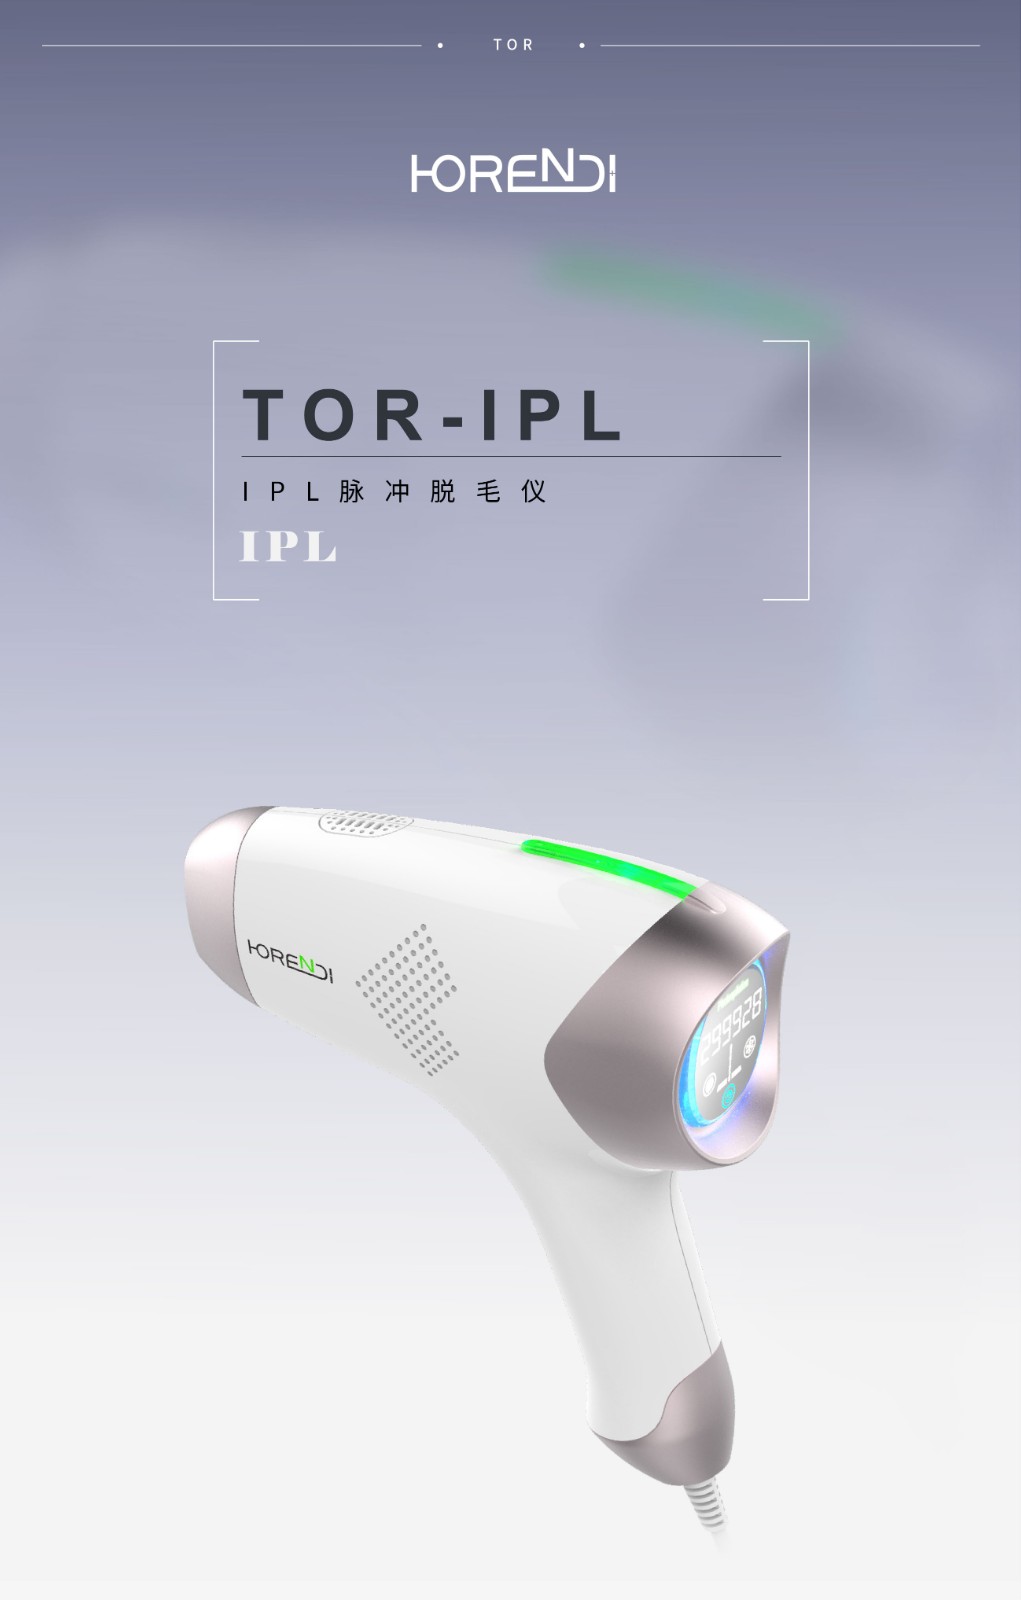 TOR-IPL 펄스 제모 장치: -1